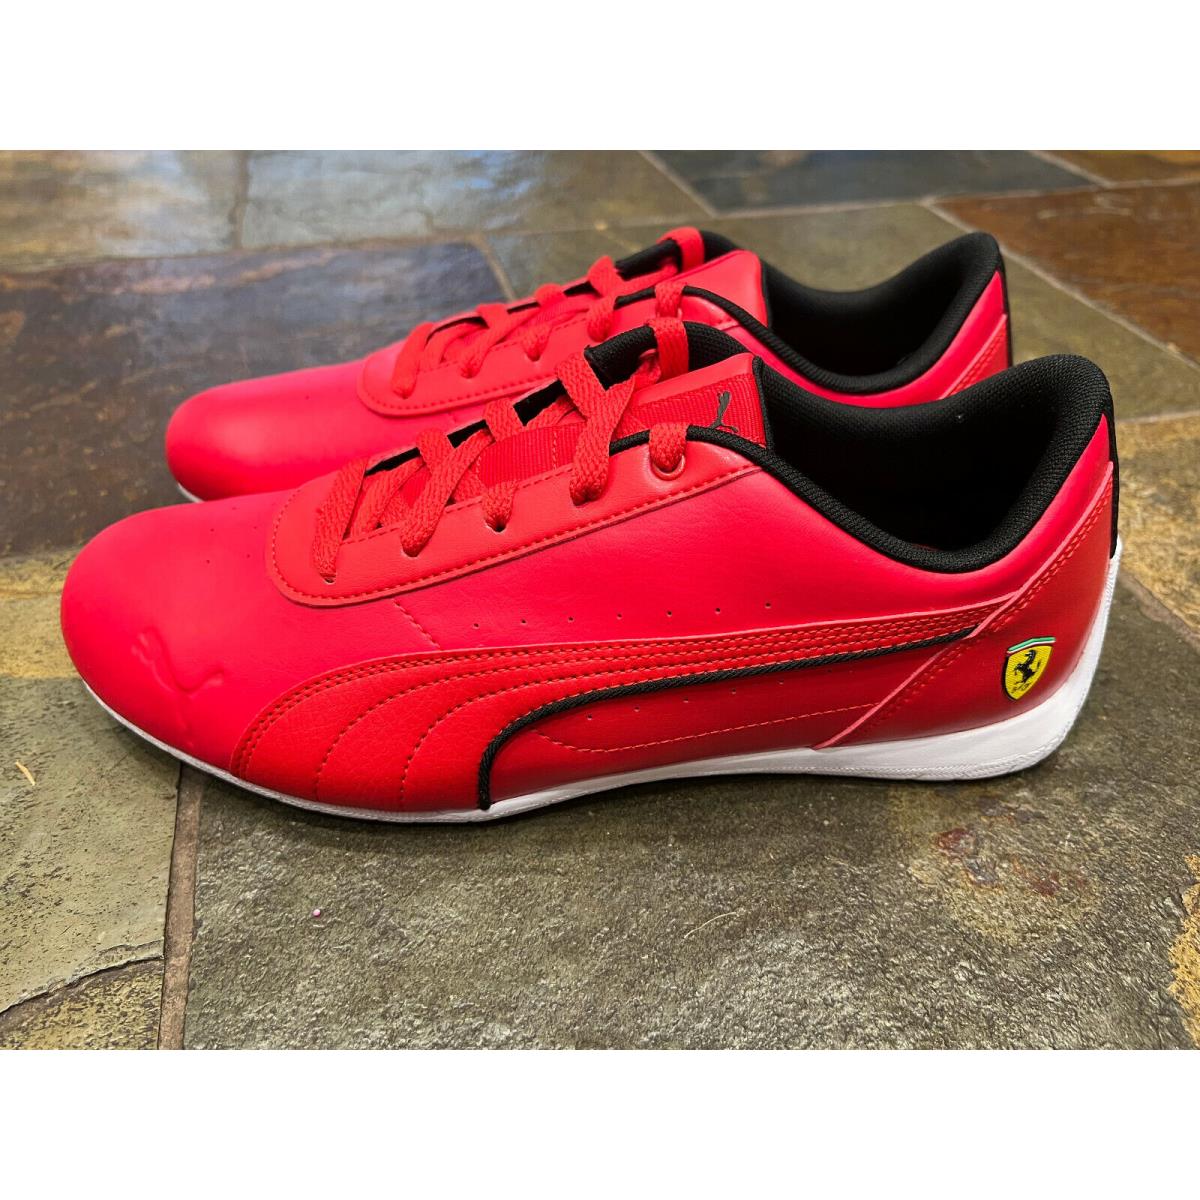 Puma shoes Auto - Red 4